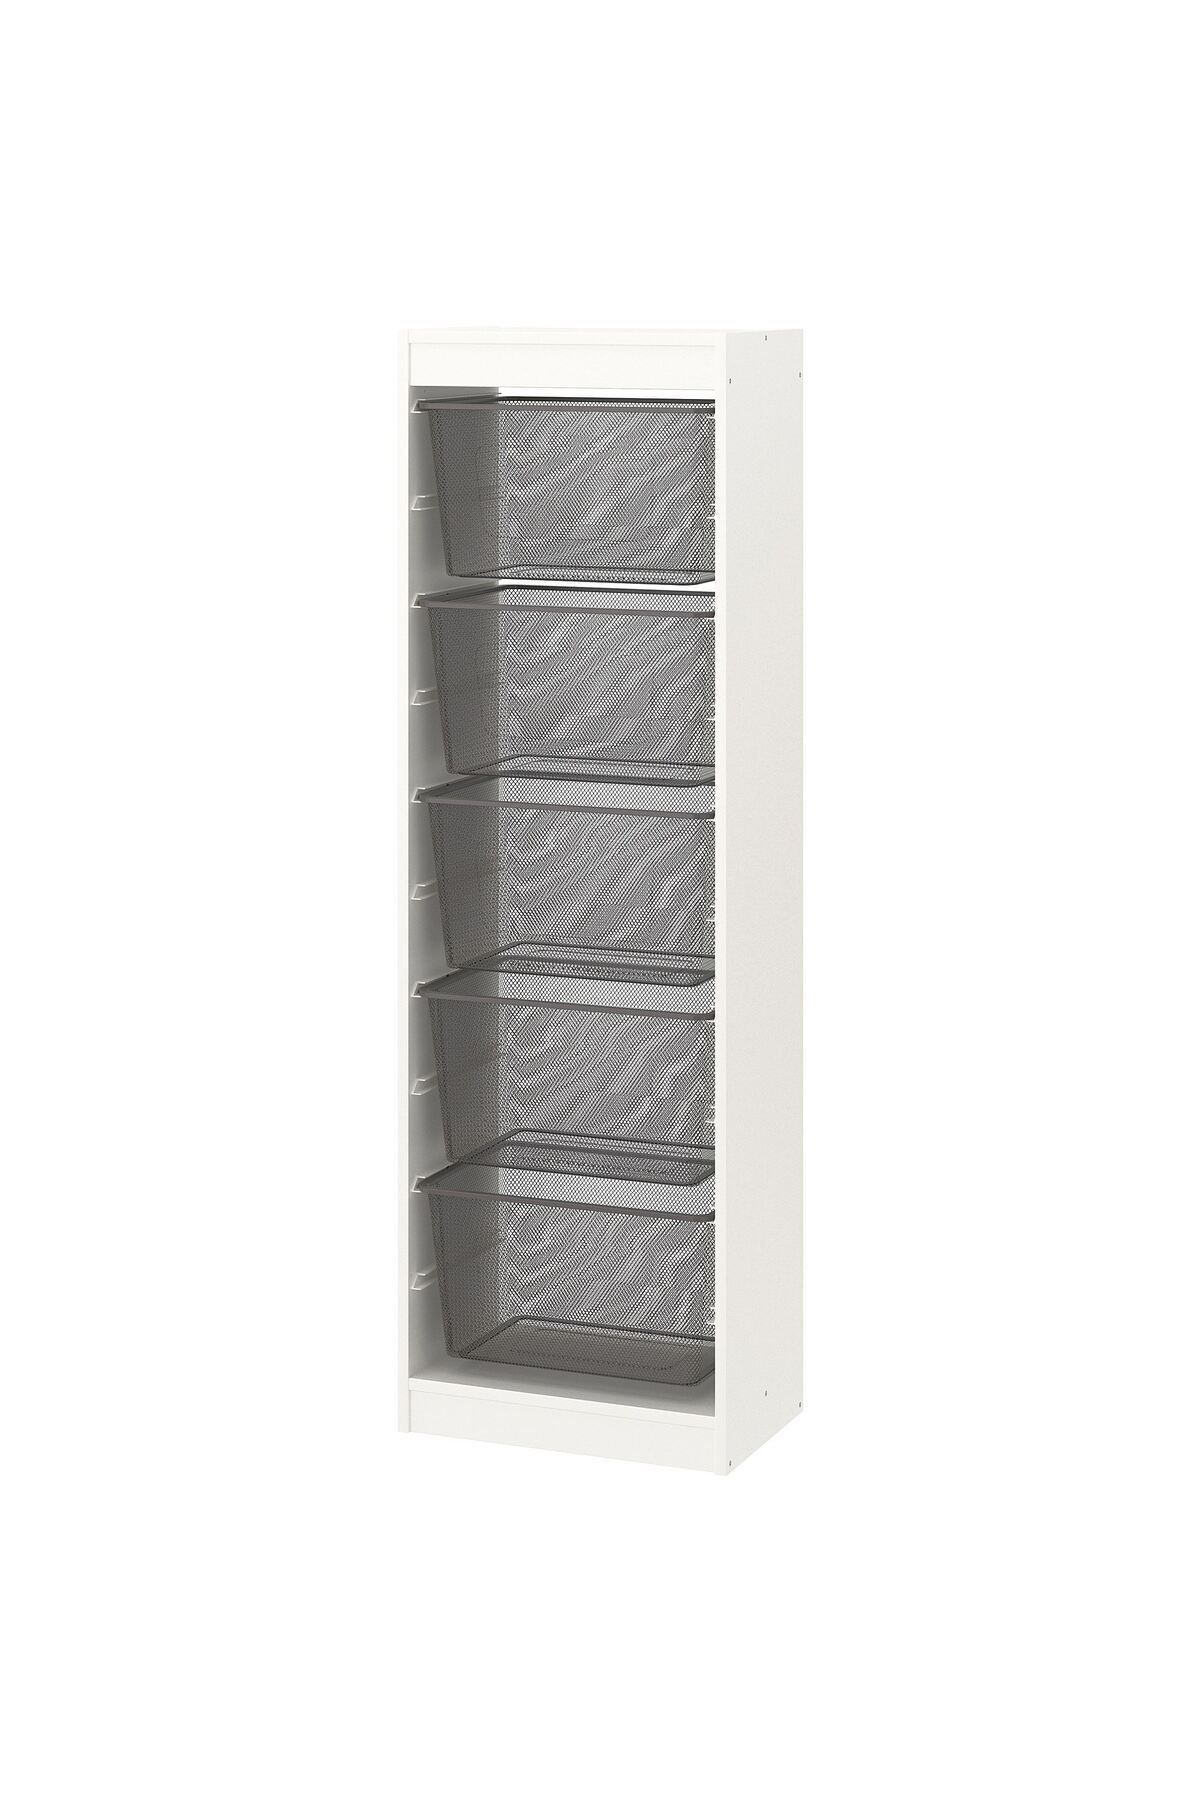 IKEA saklama ünitesi, beyaz-gri, 46x30x145 cm